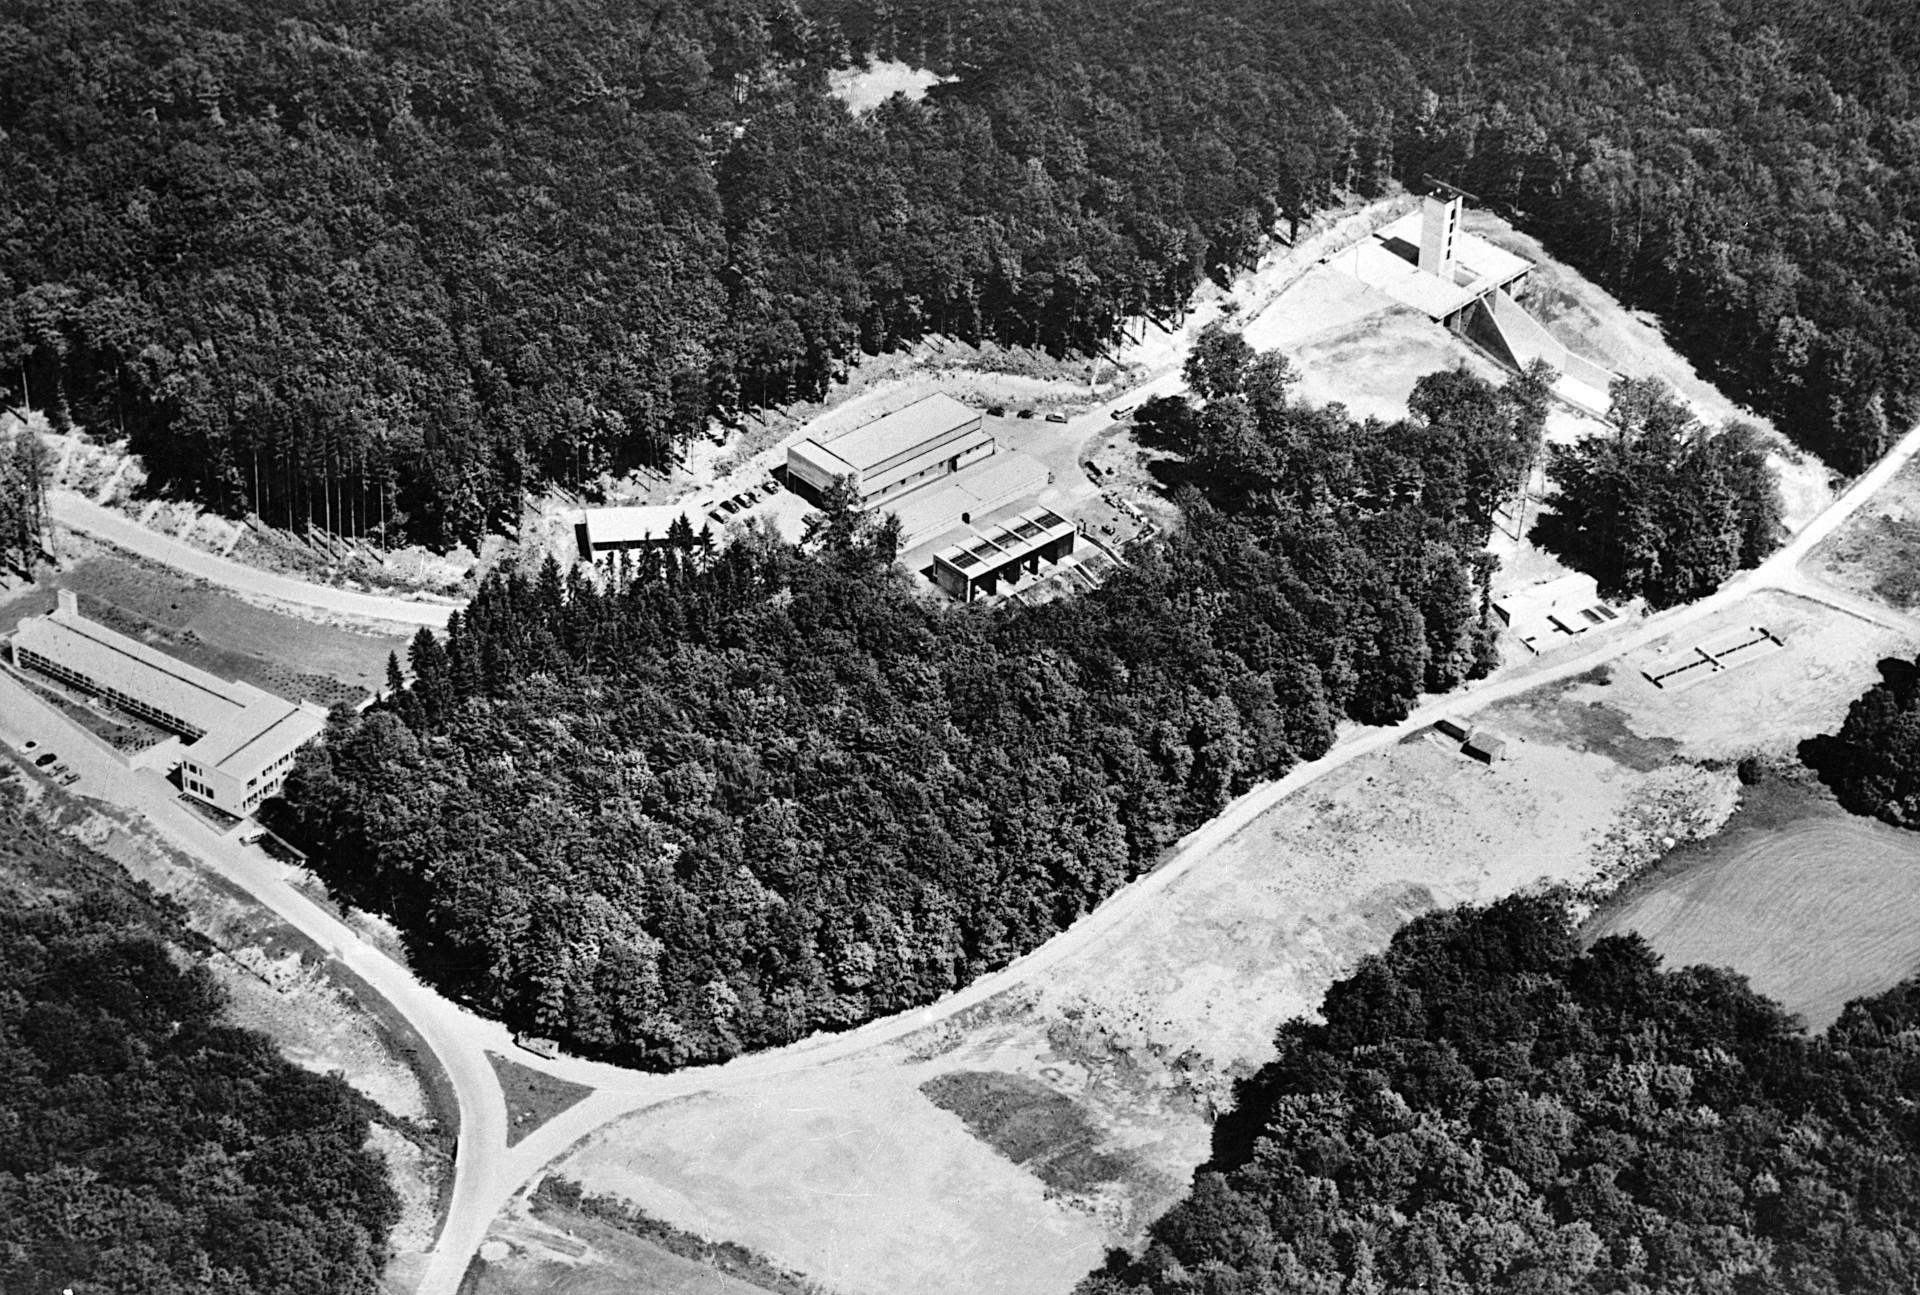 Luftbild des DLR-Standortes Lampoldshausen aus dem Jahr 1962